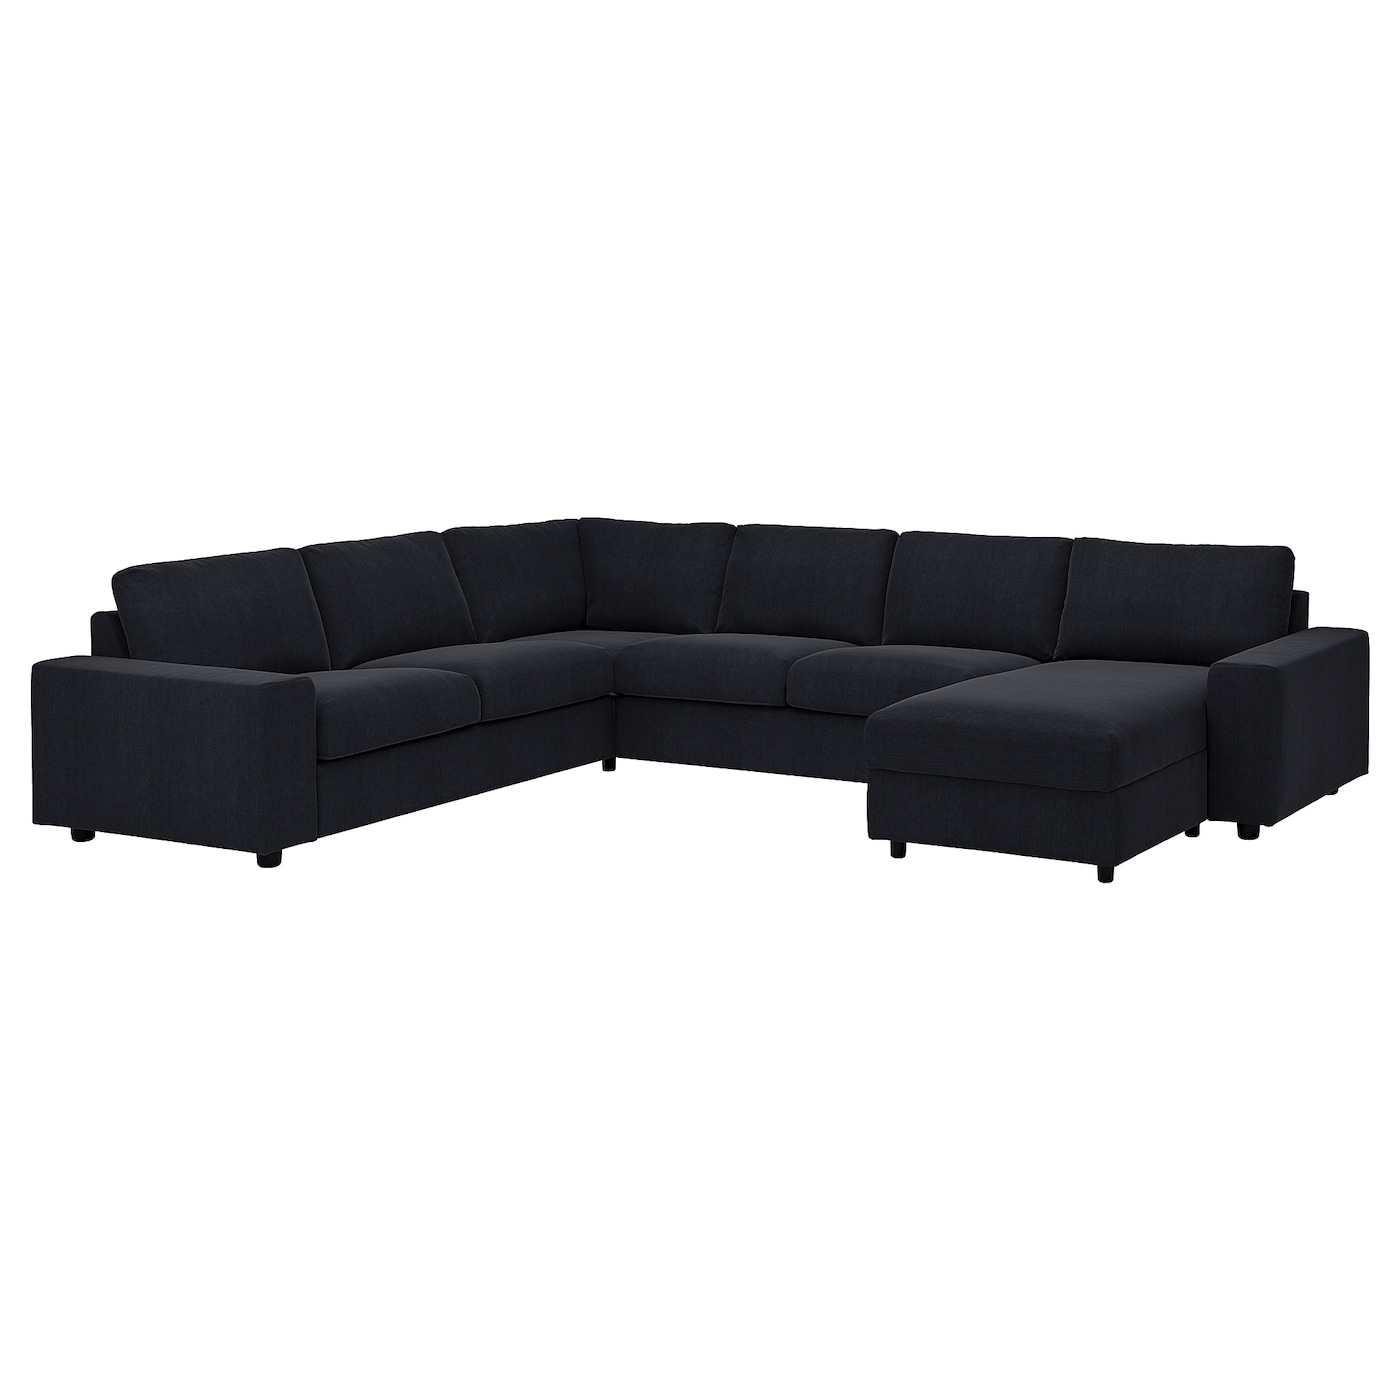 угловой диван флит ВИМЛЕ Диван угловой, 5-местный. диван+диван, с широкими подлокотниками/Saxemara черно-синий VIMLE IKEA